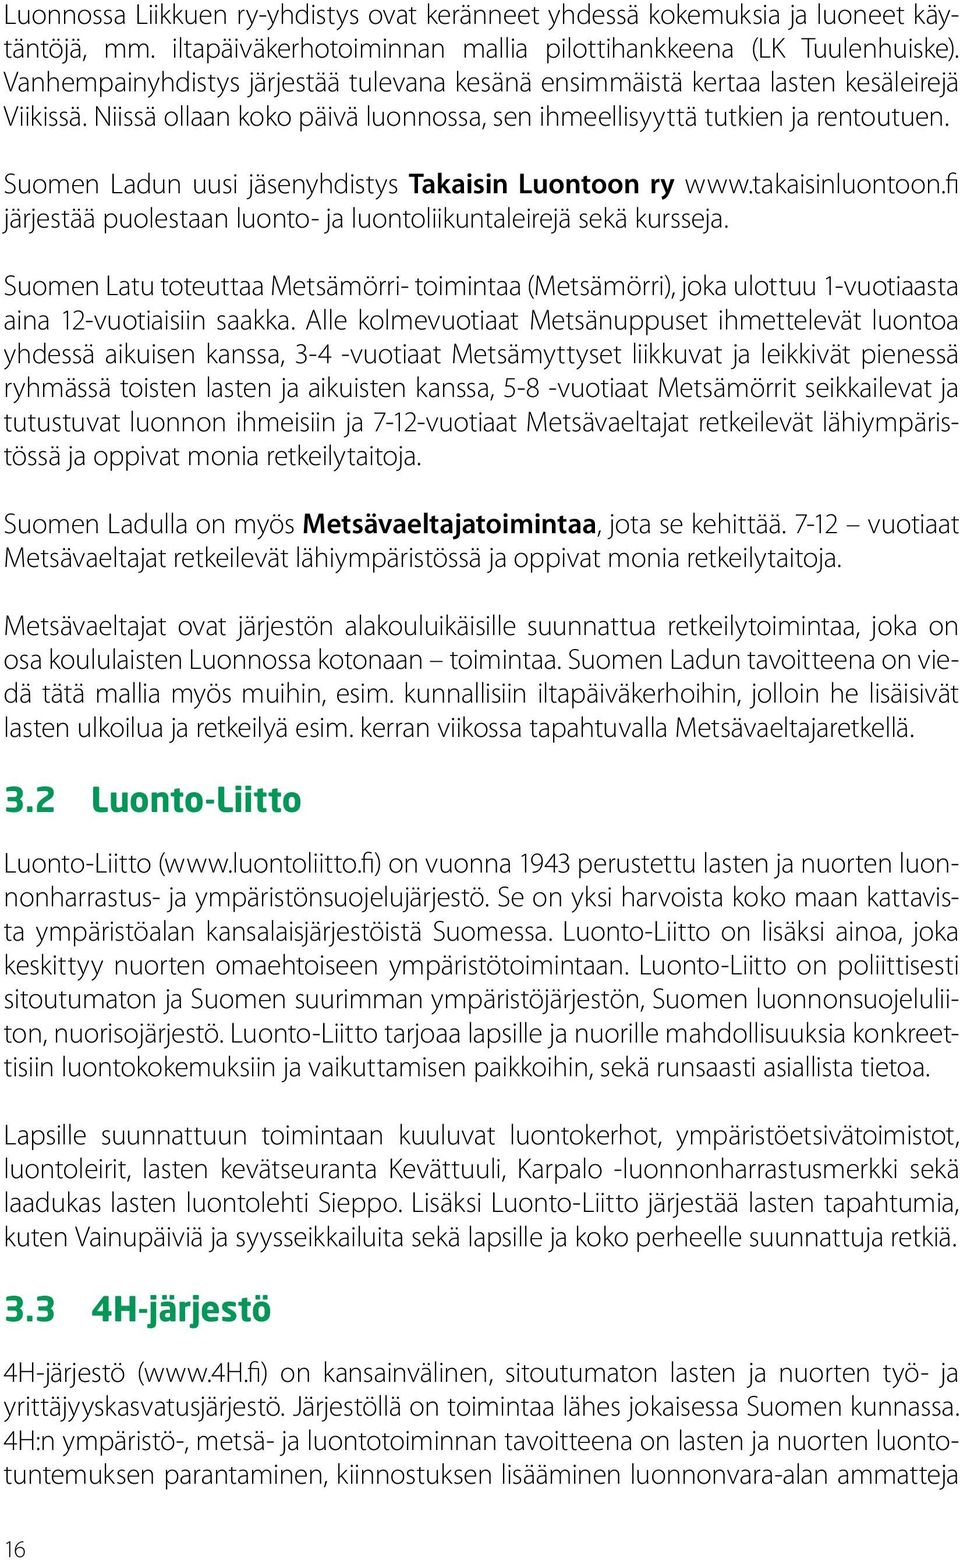 Suomen Ladun uusi jäsenyhdistys Takaisin Luontoon ry www.takaisinluontoon.fi järjestää puolestaan luonto- ja luontoliikuntaleirejä sekä kursseja.